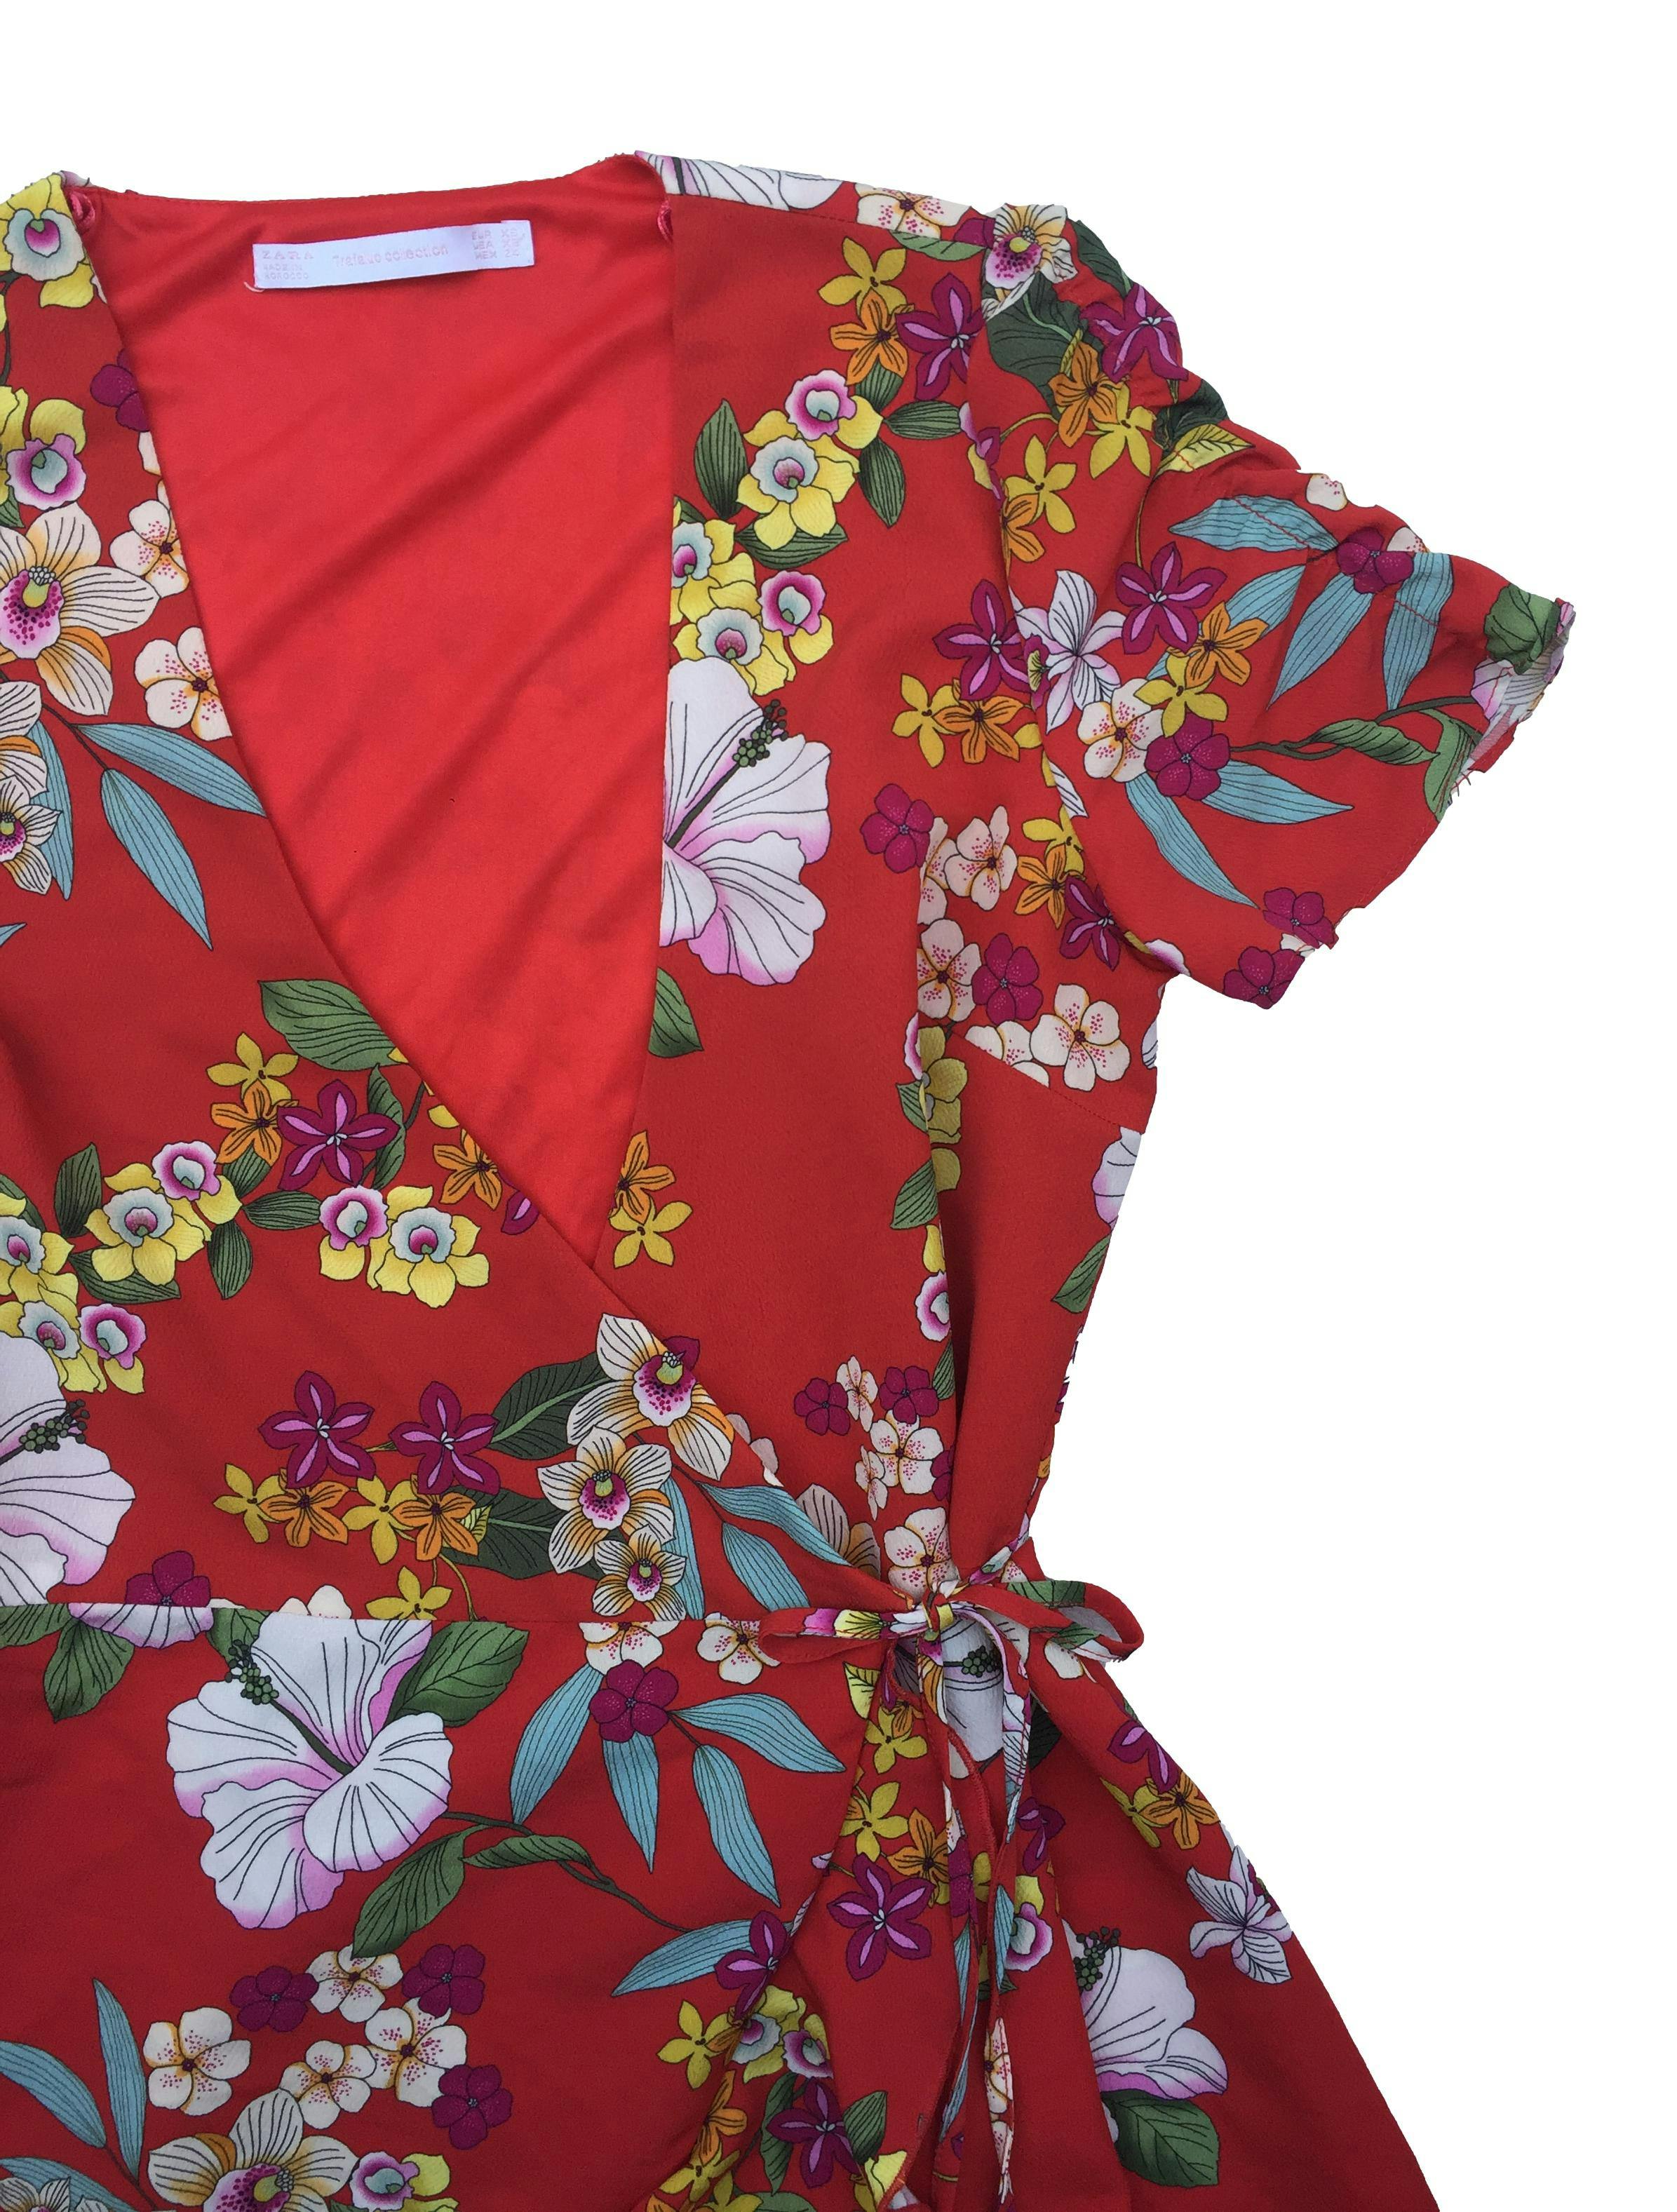 Vestido Zara envolvente de crepé rojo con flores, forro en top. Busto 85cm Largo 75cm